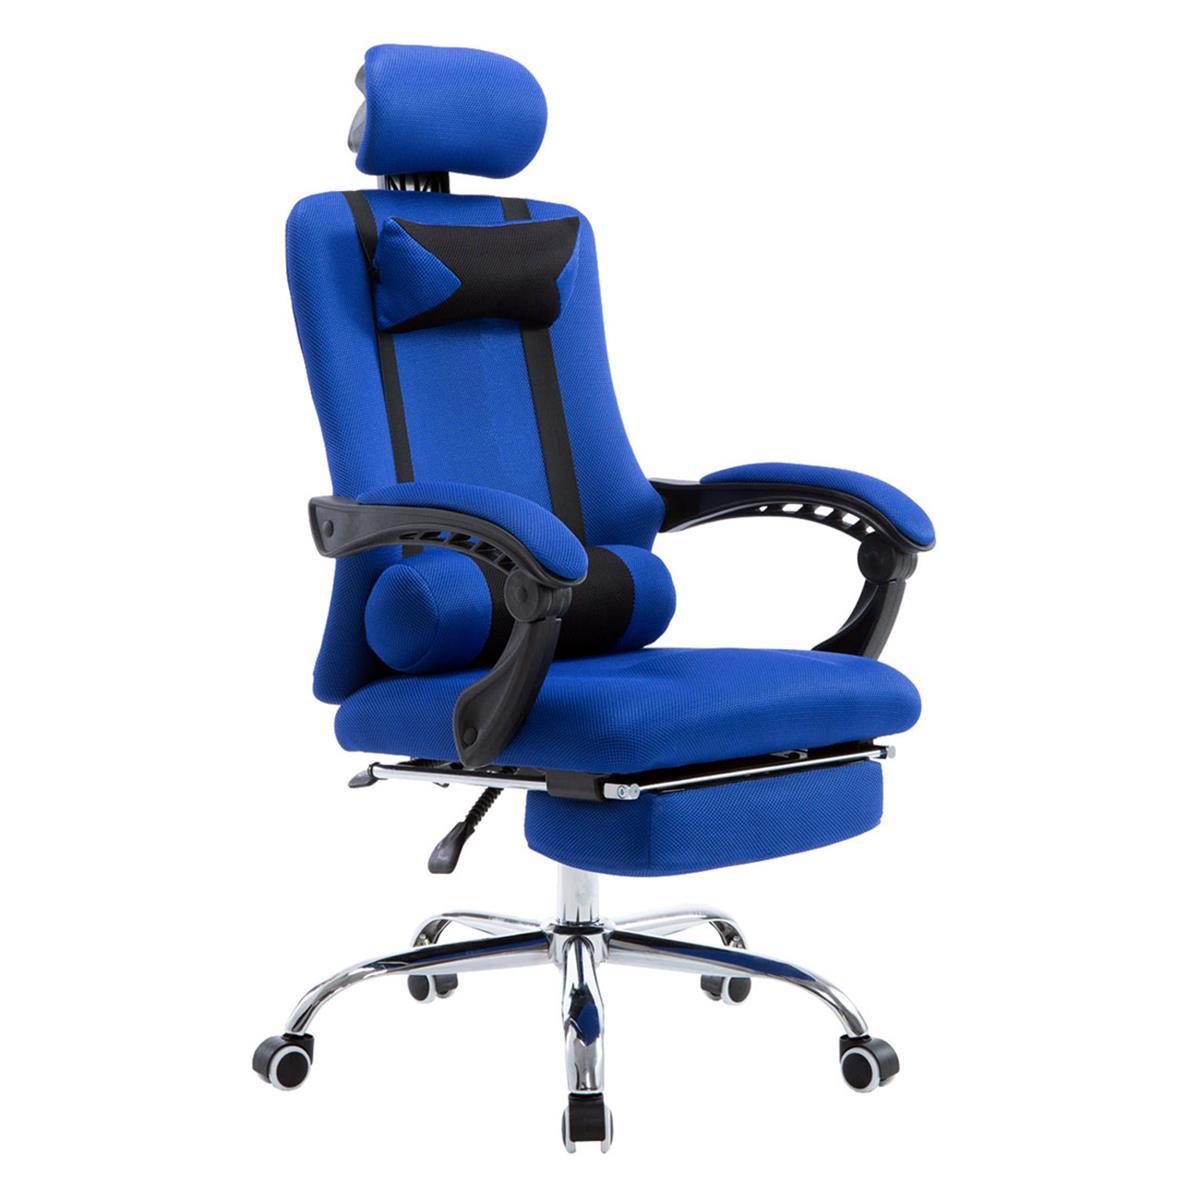 Gaming-Stuhl ANTARES, ausziehbare Fußablage, atmungsaktiver Netzbezug, Farbe Blau